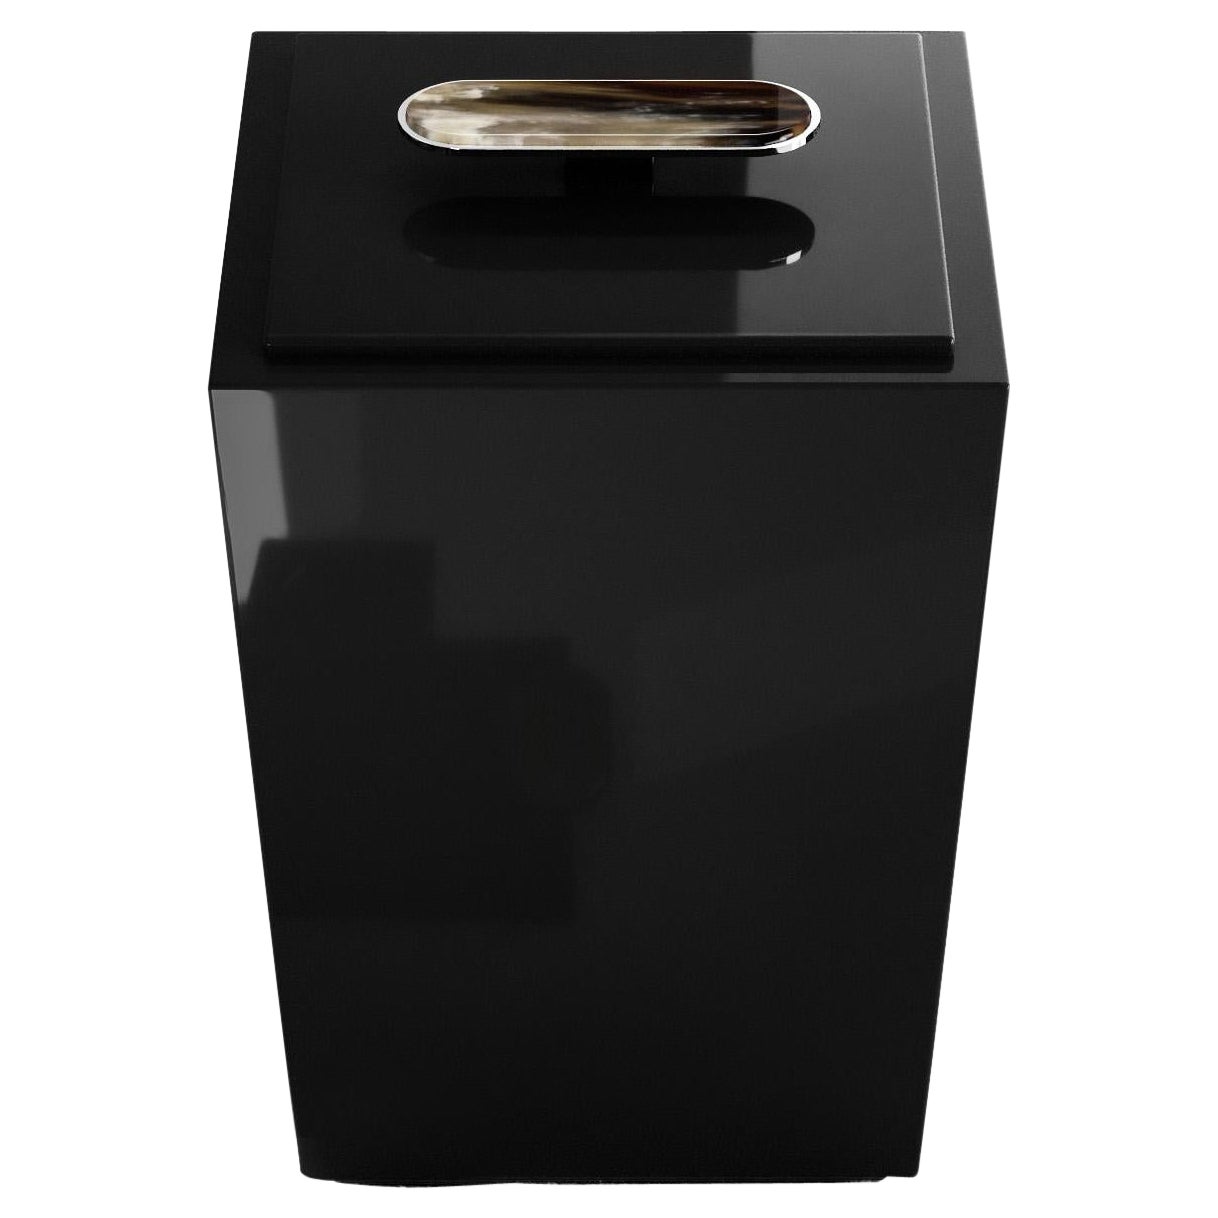 Bicco Waste Papierkorb aus schwarz lackiertem Holz und Corno Italiano, Mod. 2426